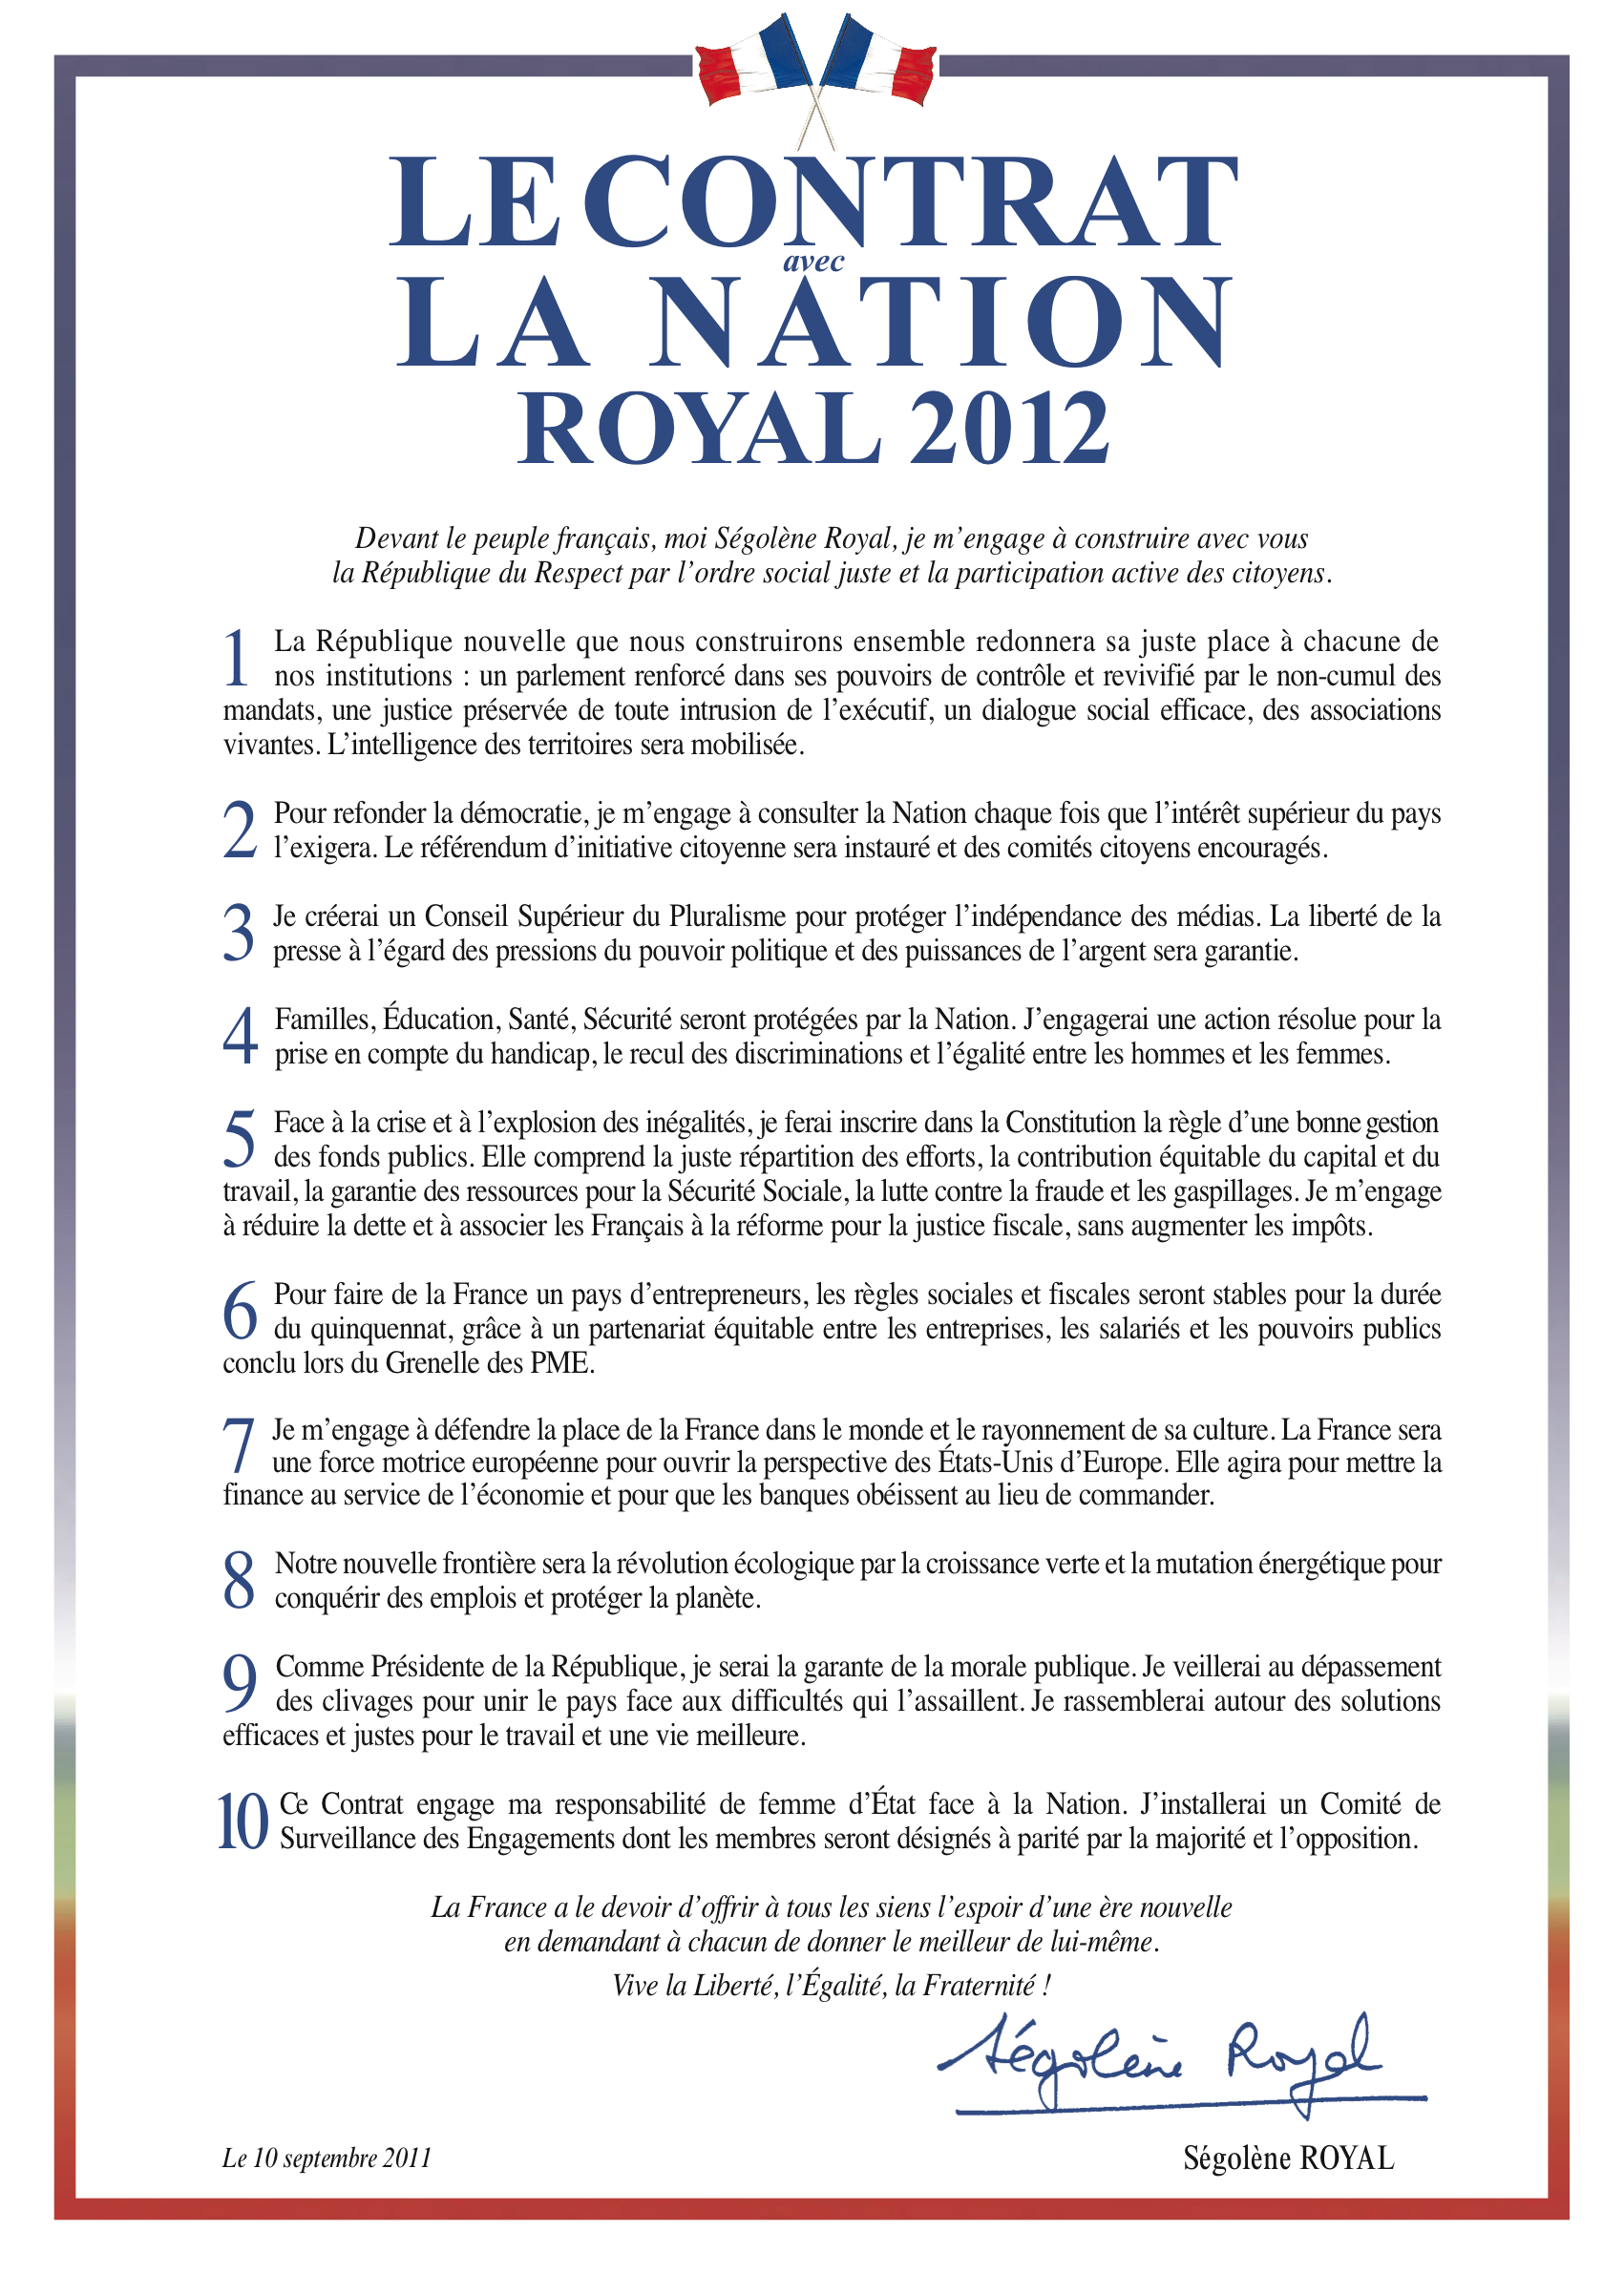 « Le contrat avec la Nation » présenté par Ségolène Royal lors de son meeting à Montreuil (93), le 10 septembre 2011. Source : desirsdavenir.org/